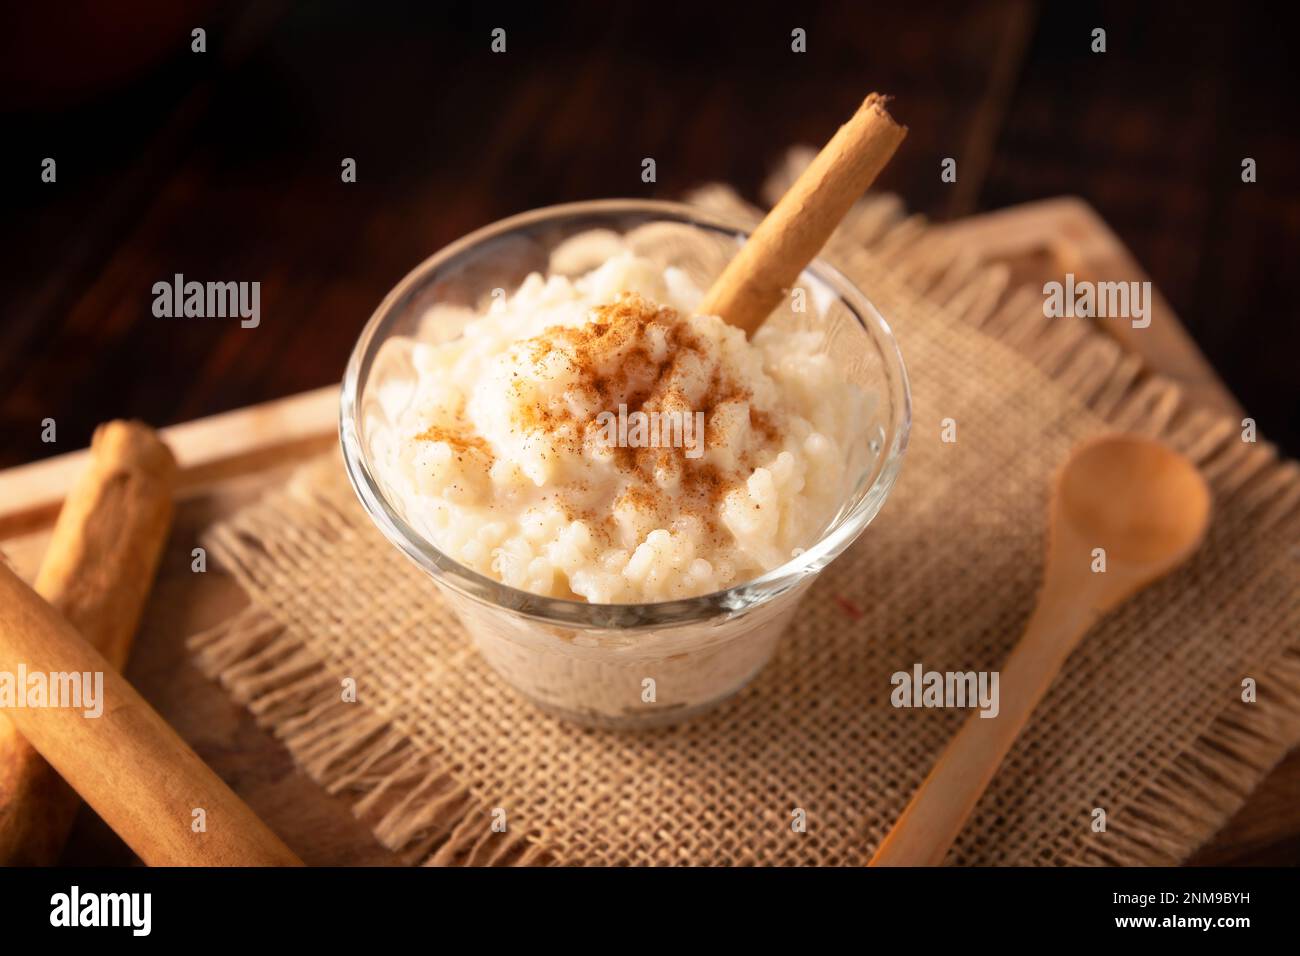 Budino di riso. Piatto dolce fatto cucinando riso nel latte e nello zucchero, alcune ricette includono cannella, vaniglia o altri ingredienti, è un esser molto facile Foto Stock